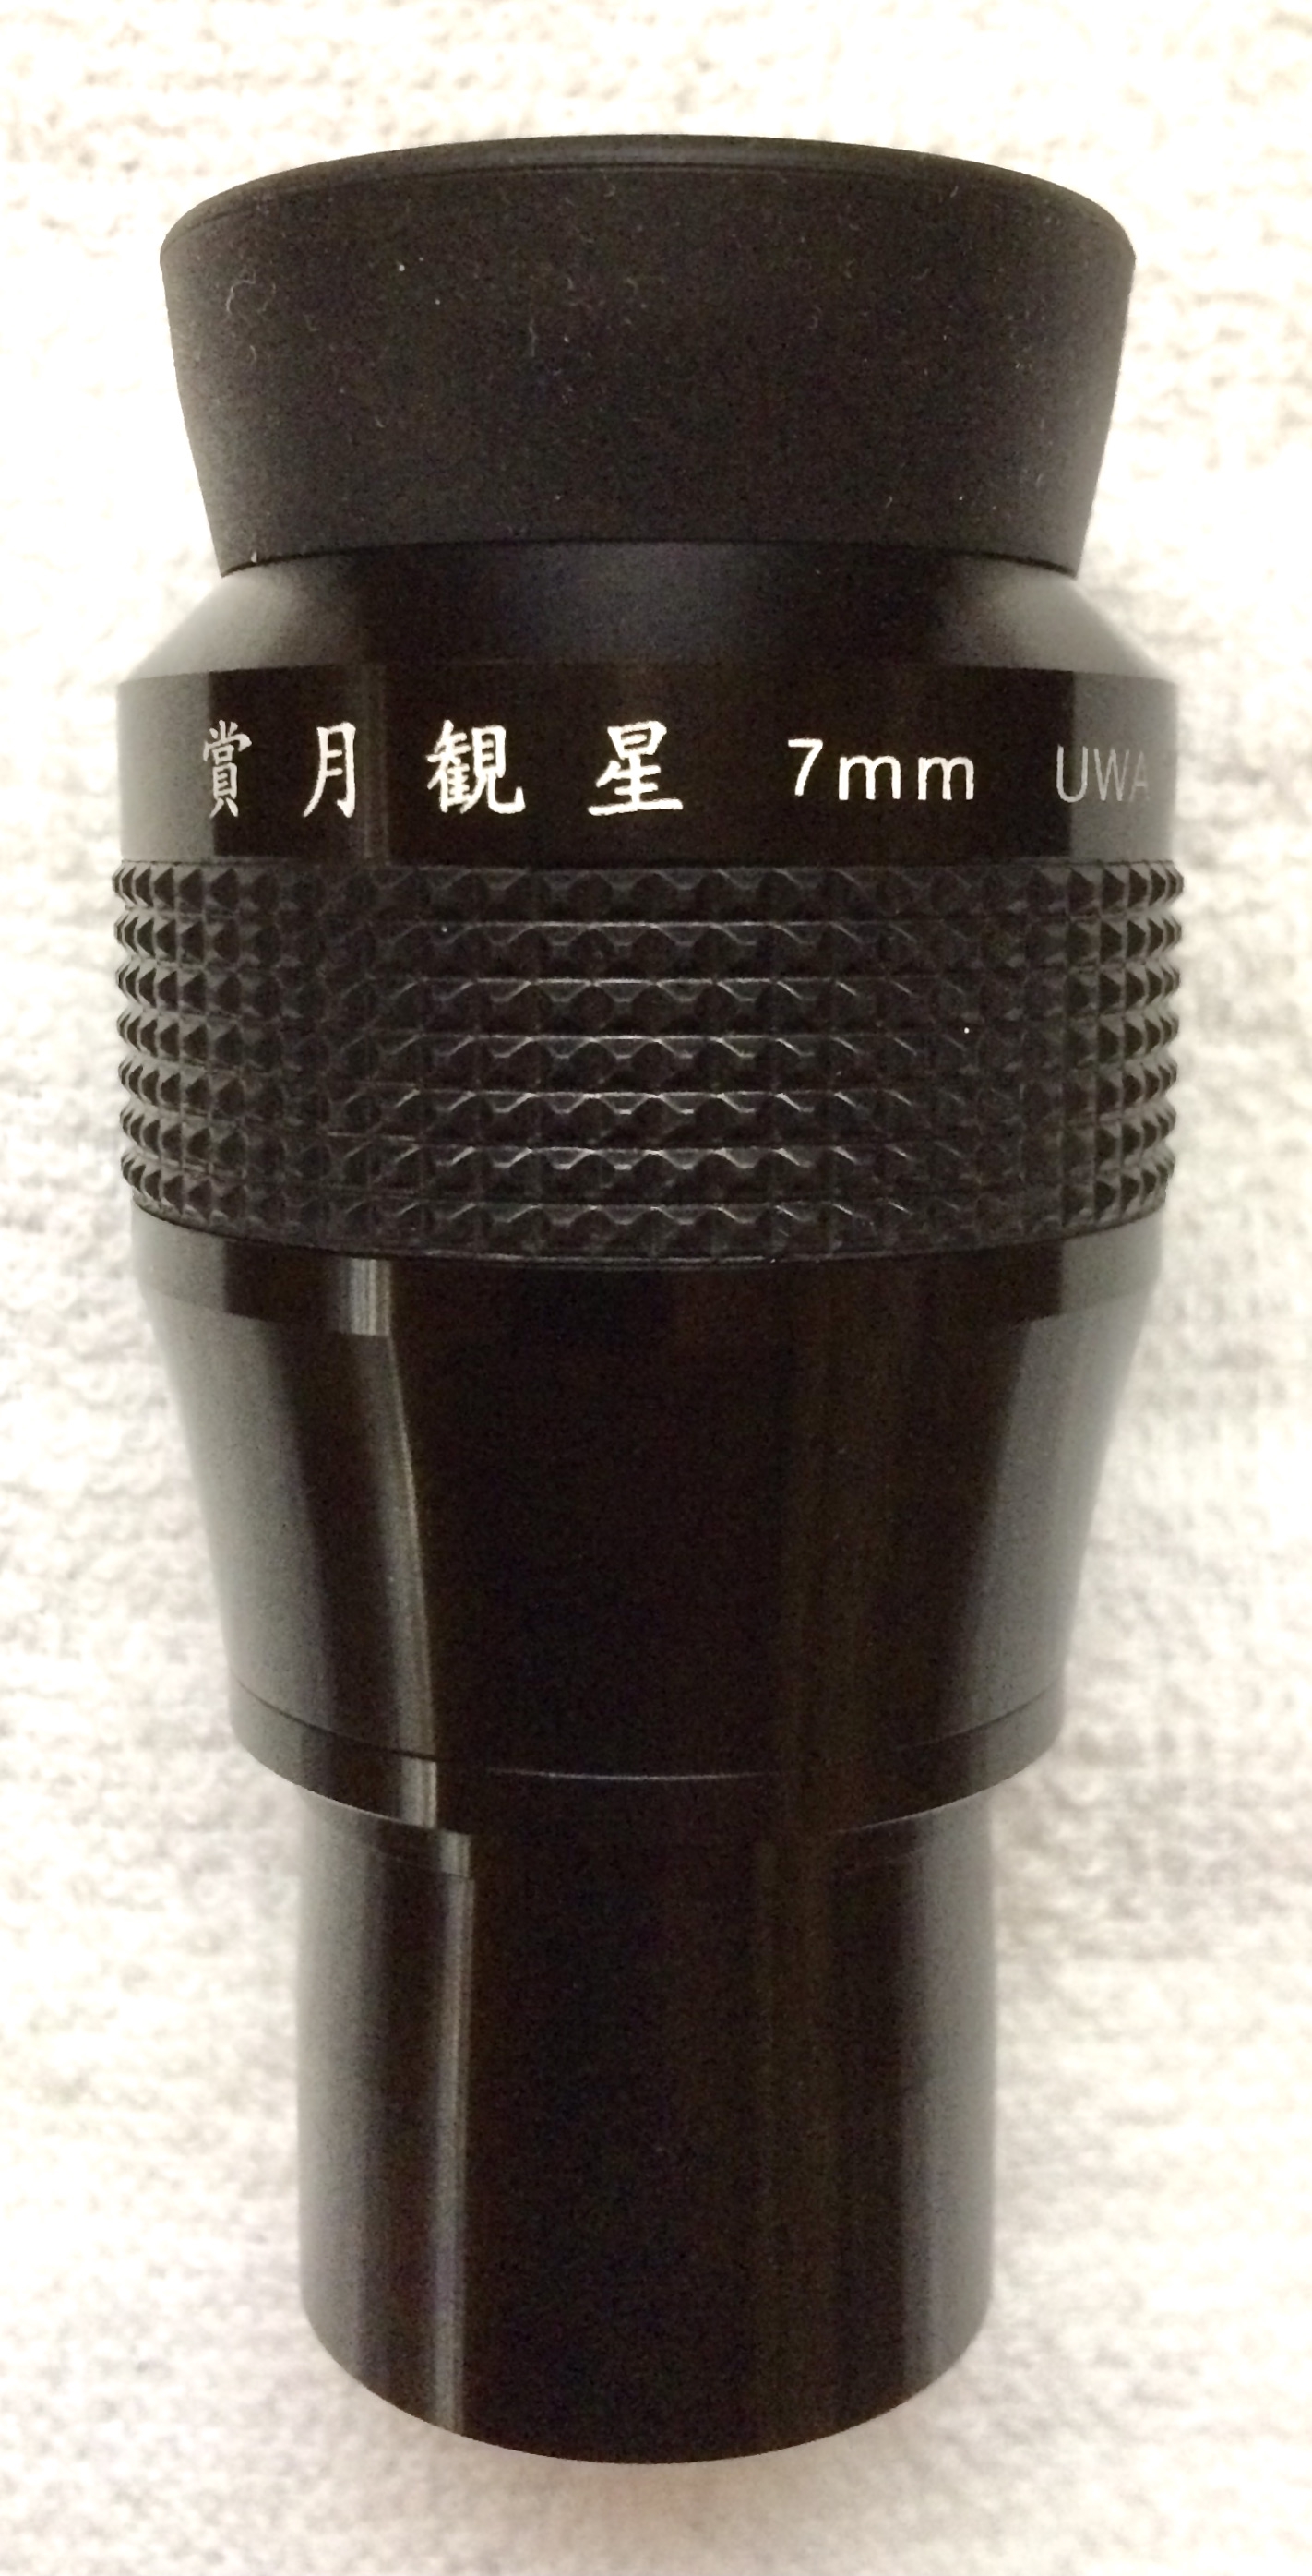 賞月観星UWA 7mm | 中村鏡とクック25cm望遠鏡